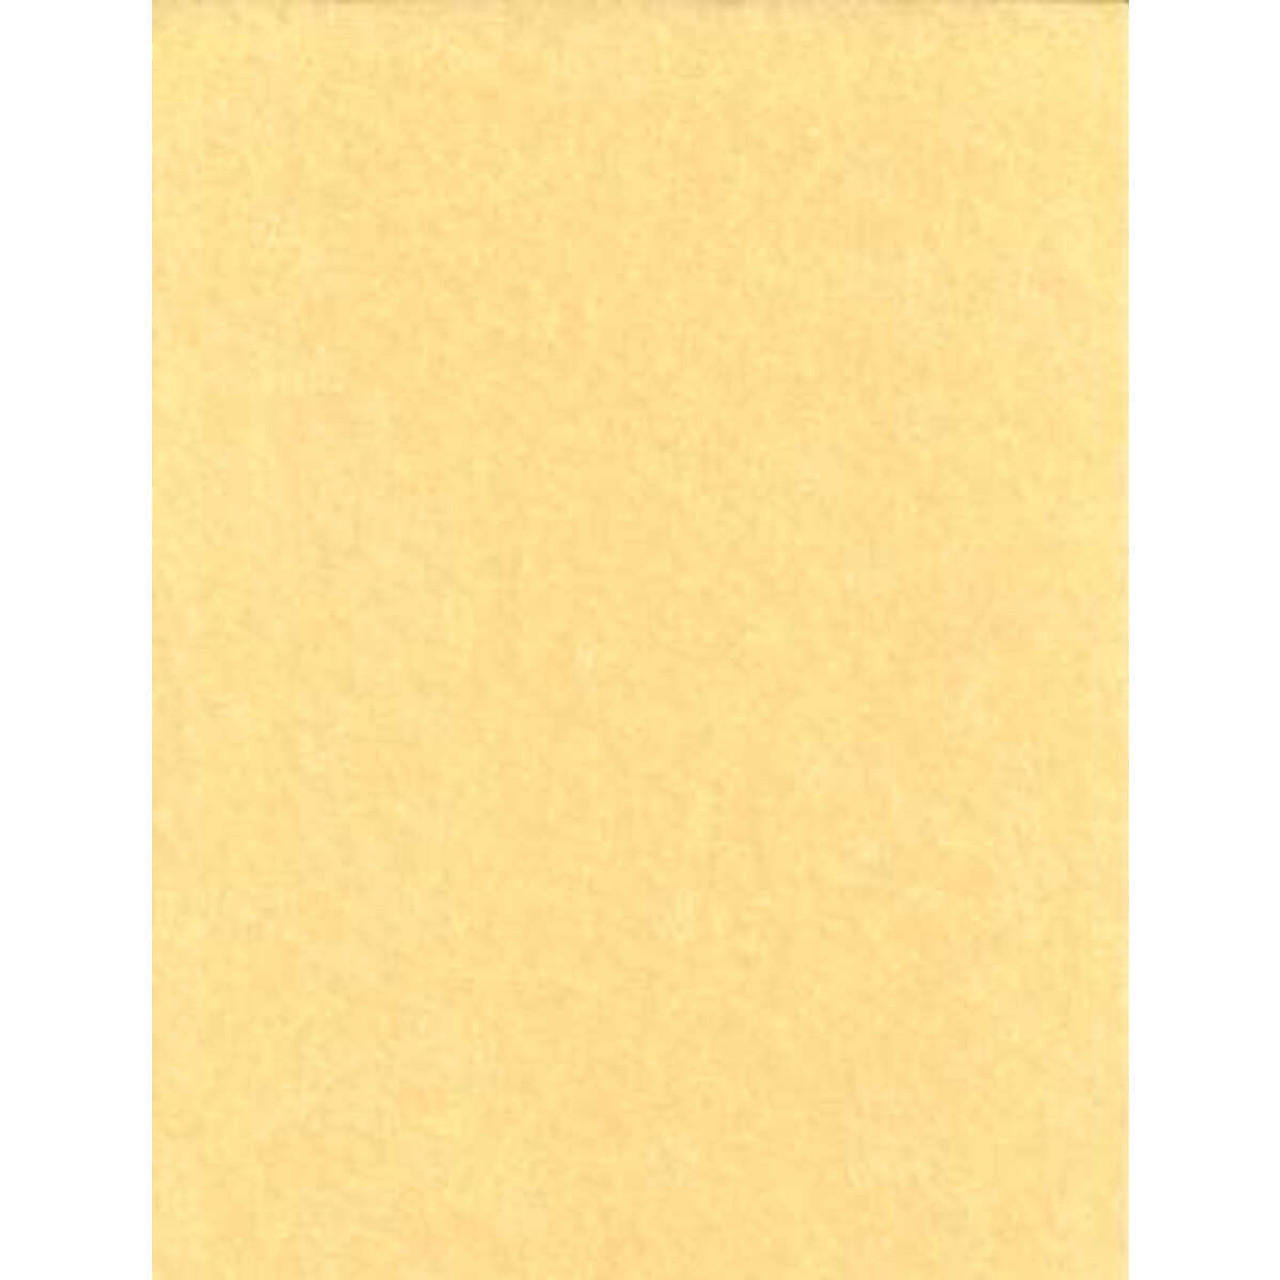 Light Parchment Paper 25 Pack (8 1/2 x 11) - The Ancient Sage